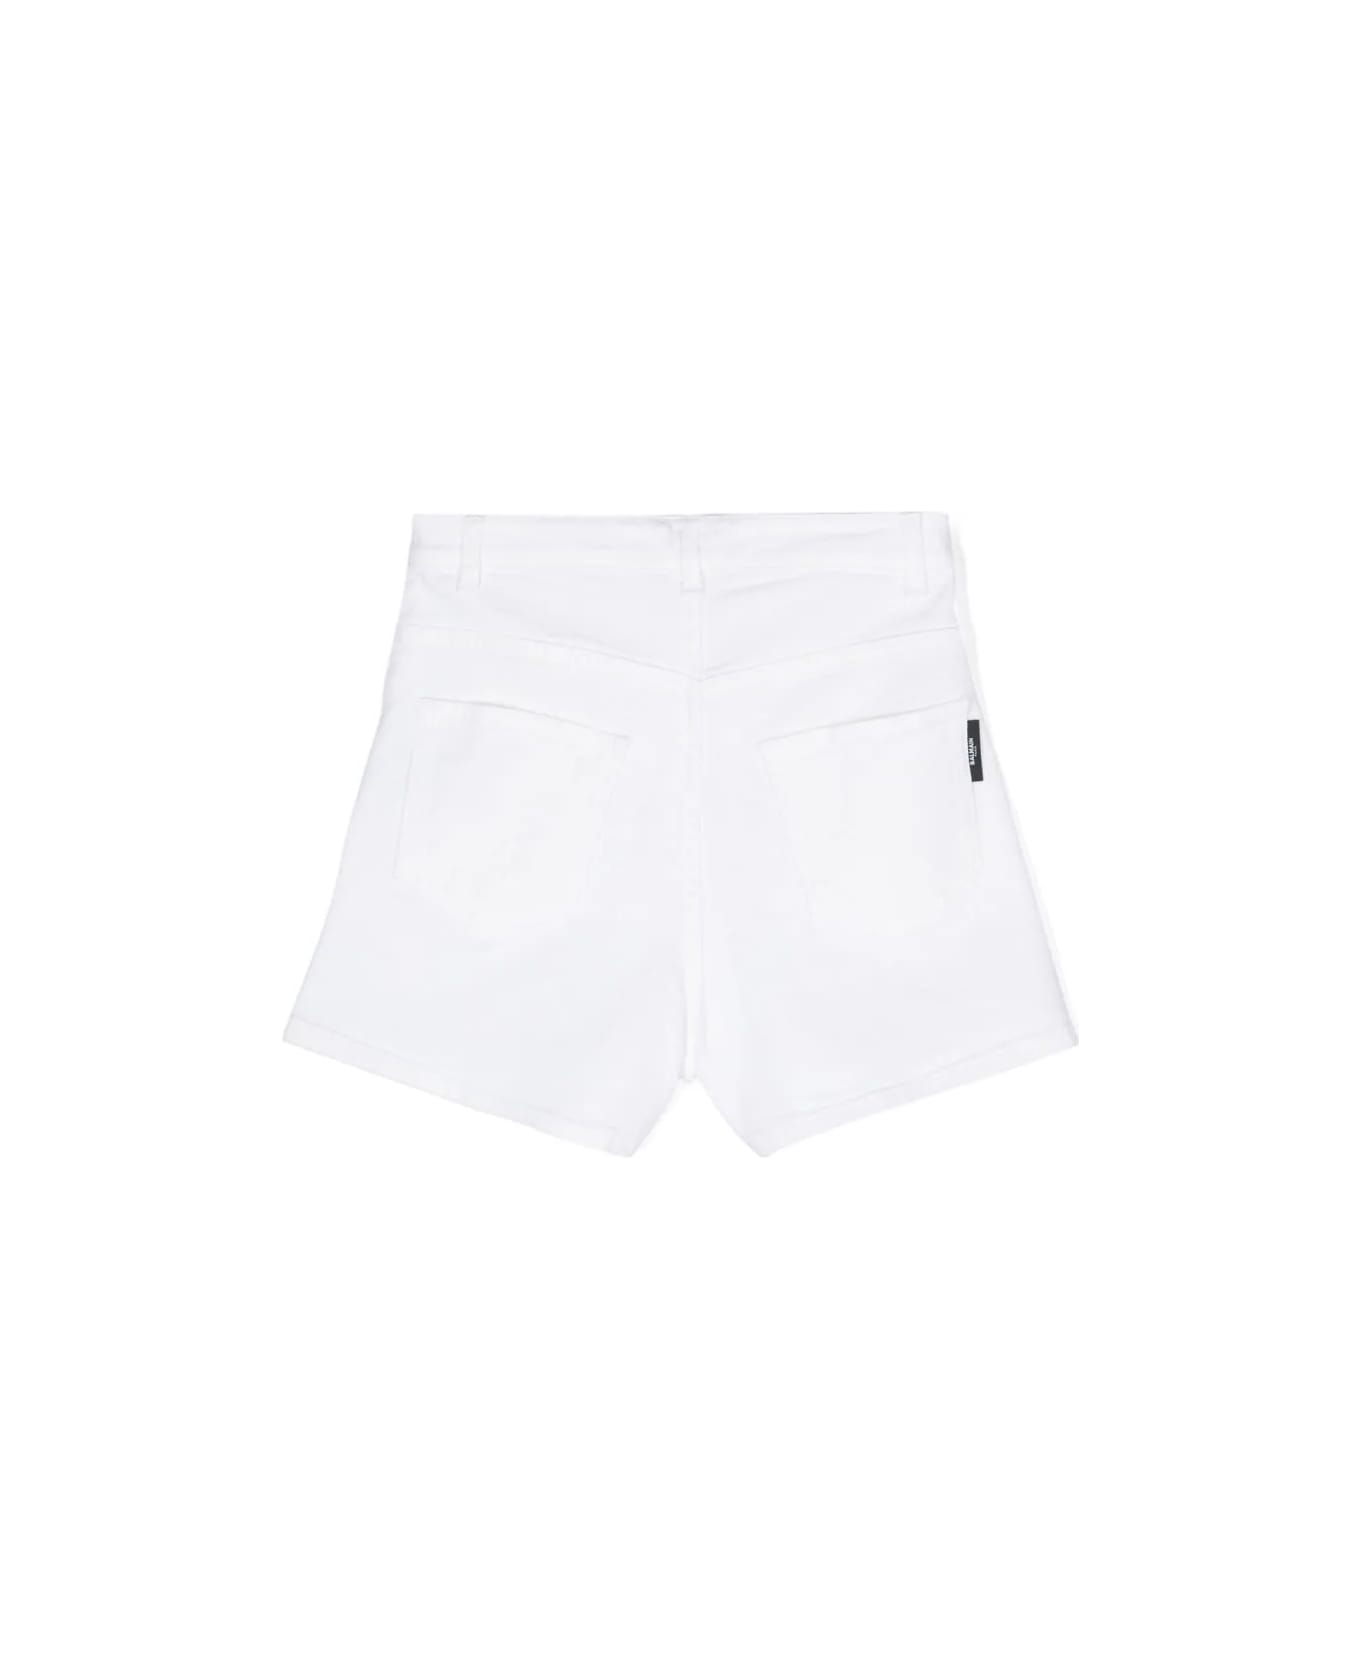 Balmain Shorts Denim - White ボトムス